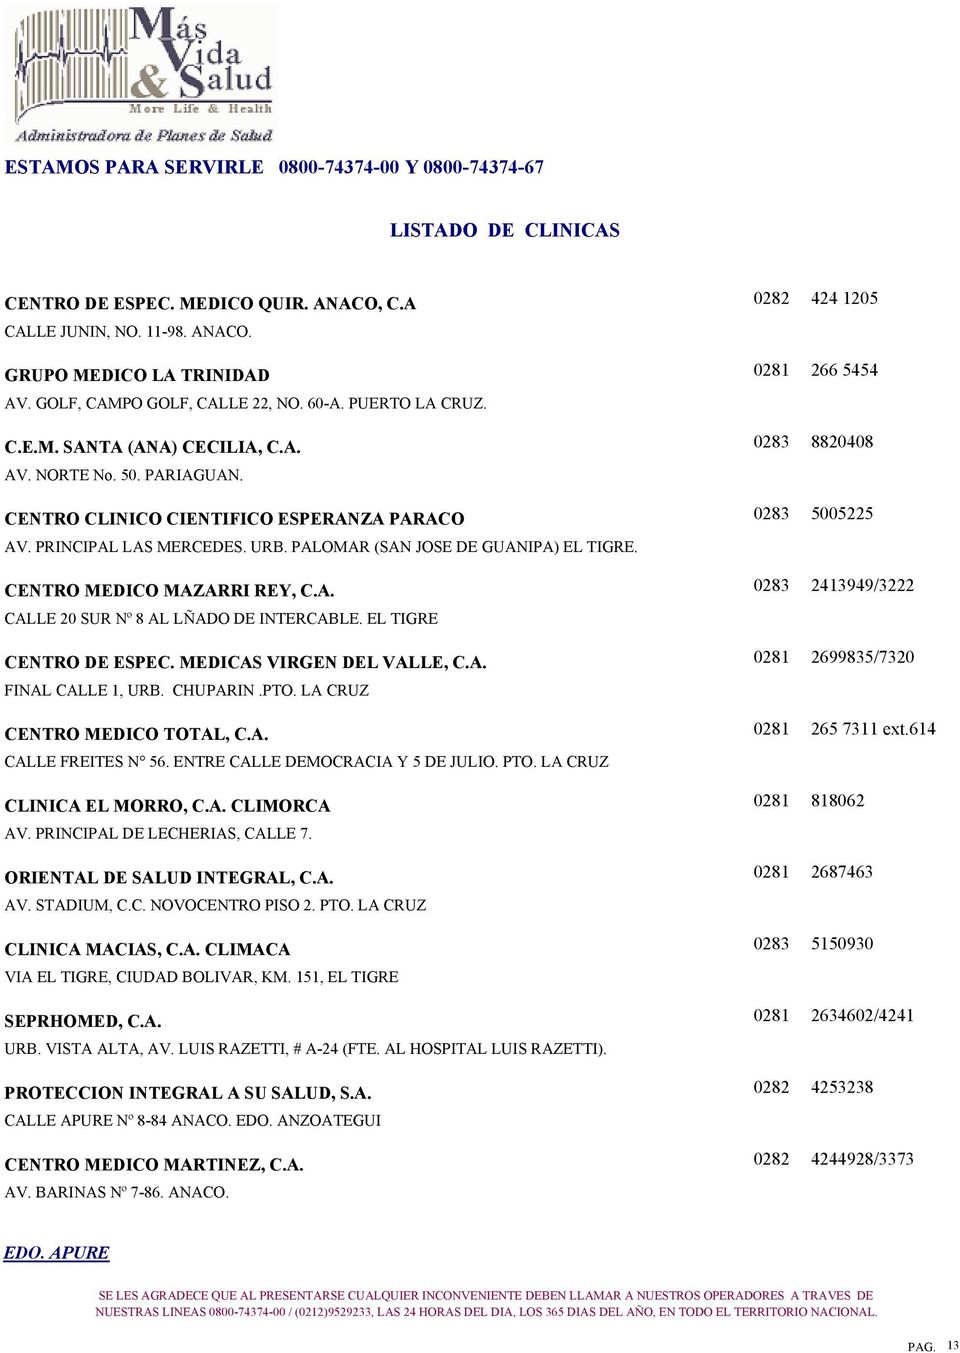 EL TIGRE CENTRO DE ESPEC. MEDICAS VIRGEN DEL VALLE, C.A. FINAL CALLE 1, URB. CHUPARIN.PTO. LA CRUZ CENTRO MEDICO TOTAL, C.A. CALLE FREITES N 56. ENTRE CALLE DEMOCRACIA Y 5 DE JULIO. PTO.